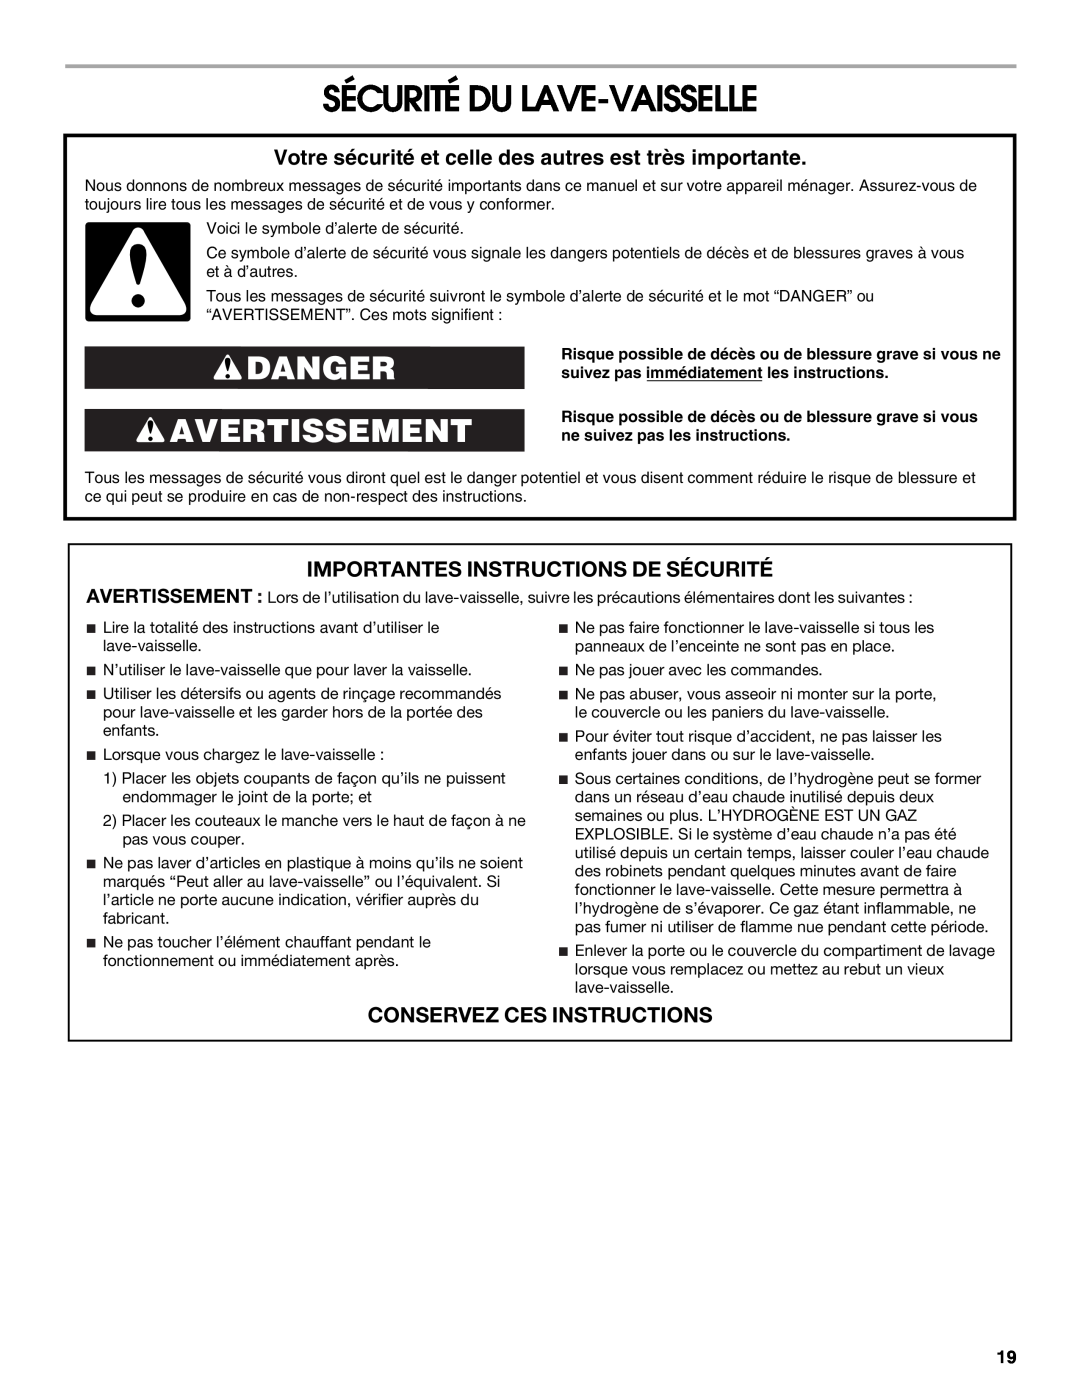 Roper RUD8050S manual Sécurité Du Lave-Vaisselle, Danger Avertissement, Importantes Instructions De Sécurité 